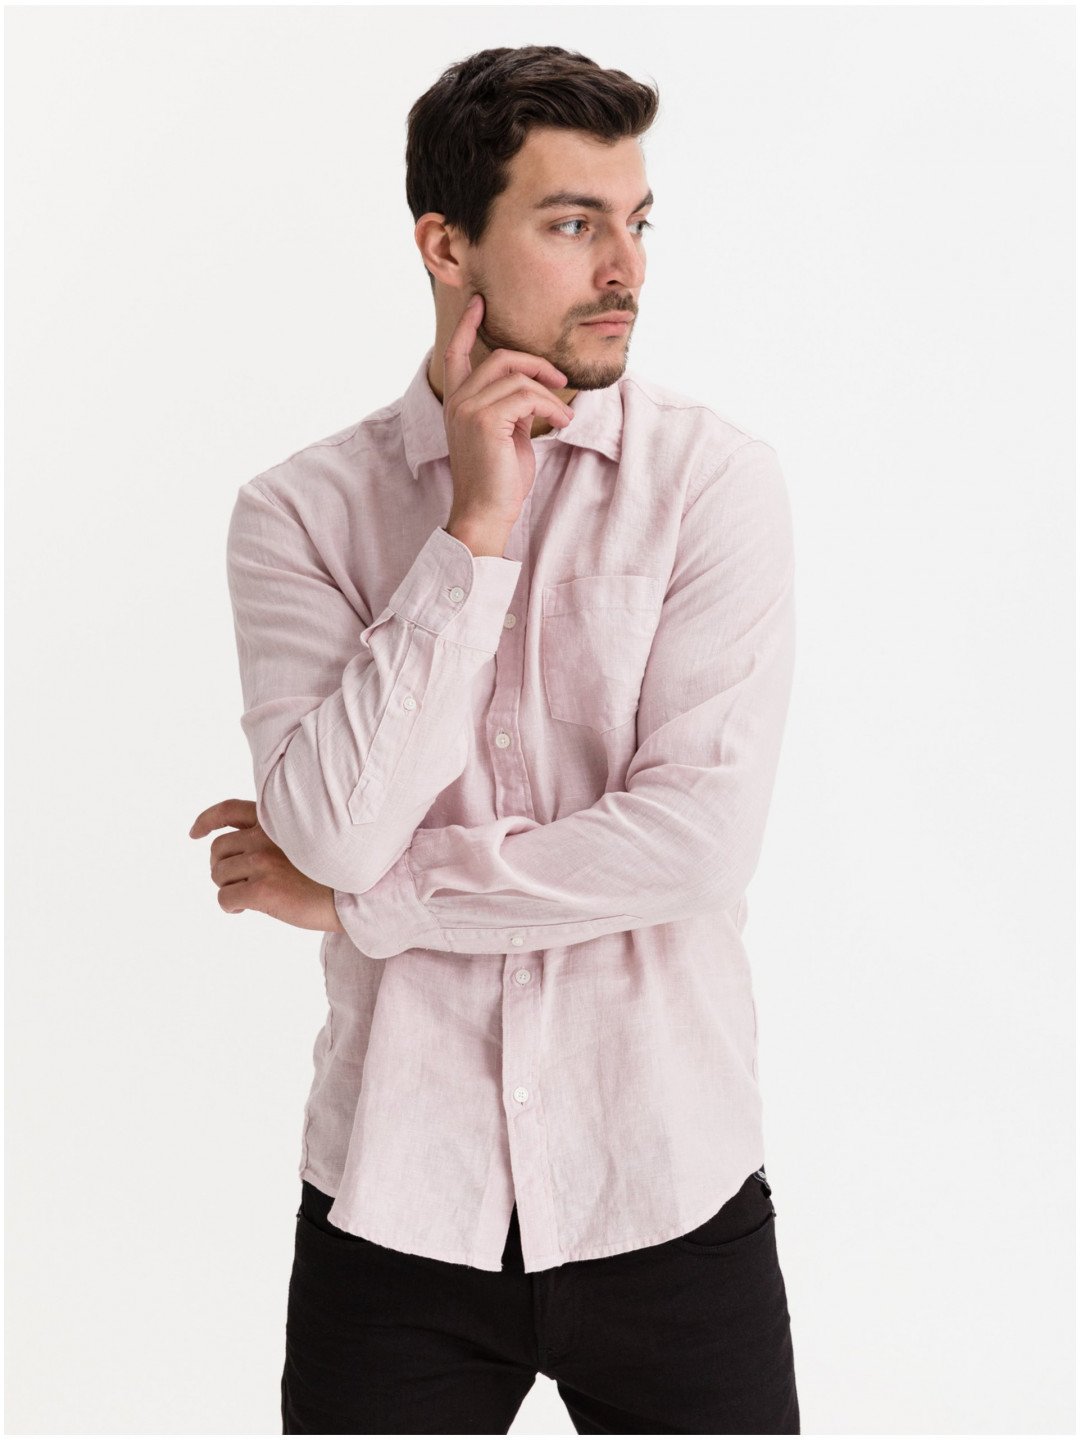 Růžová pánská lněná košile Replay